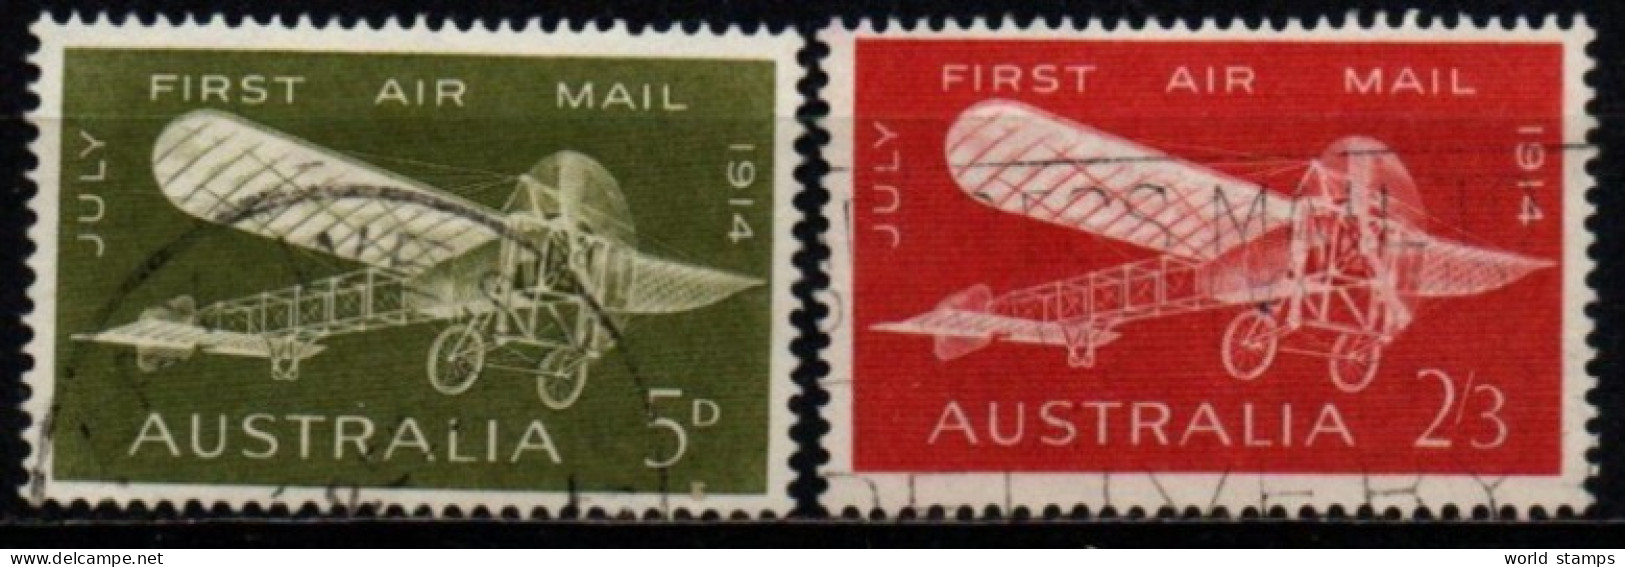 AUSTRALIE 1964 O - Usados